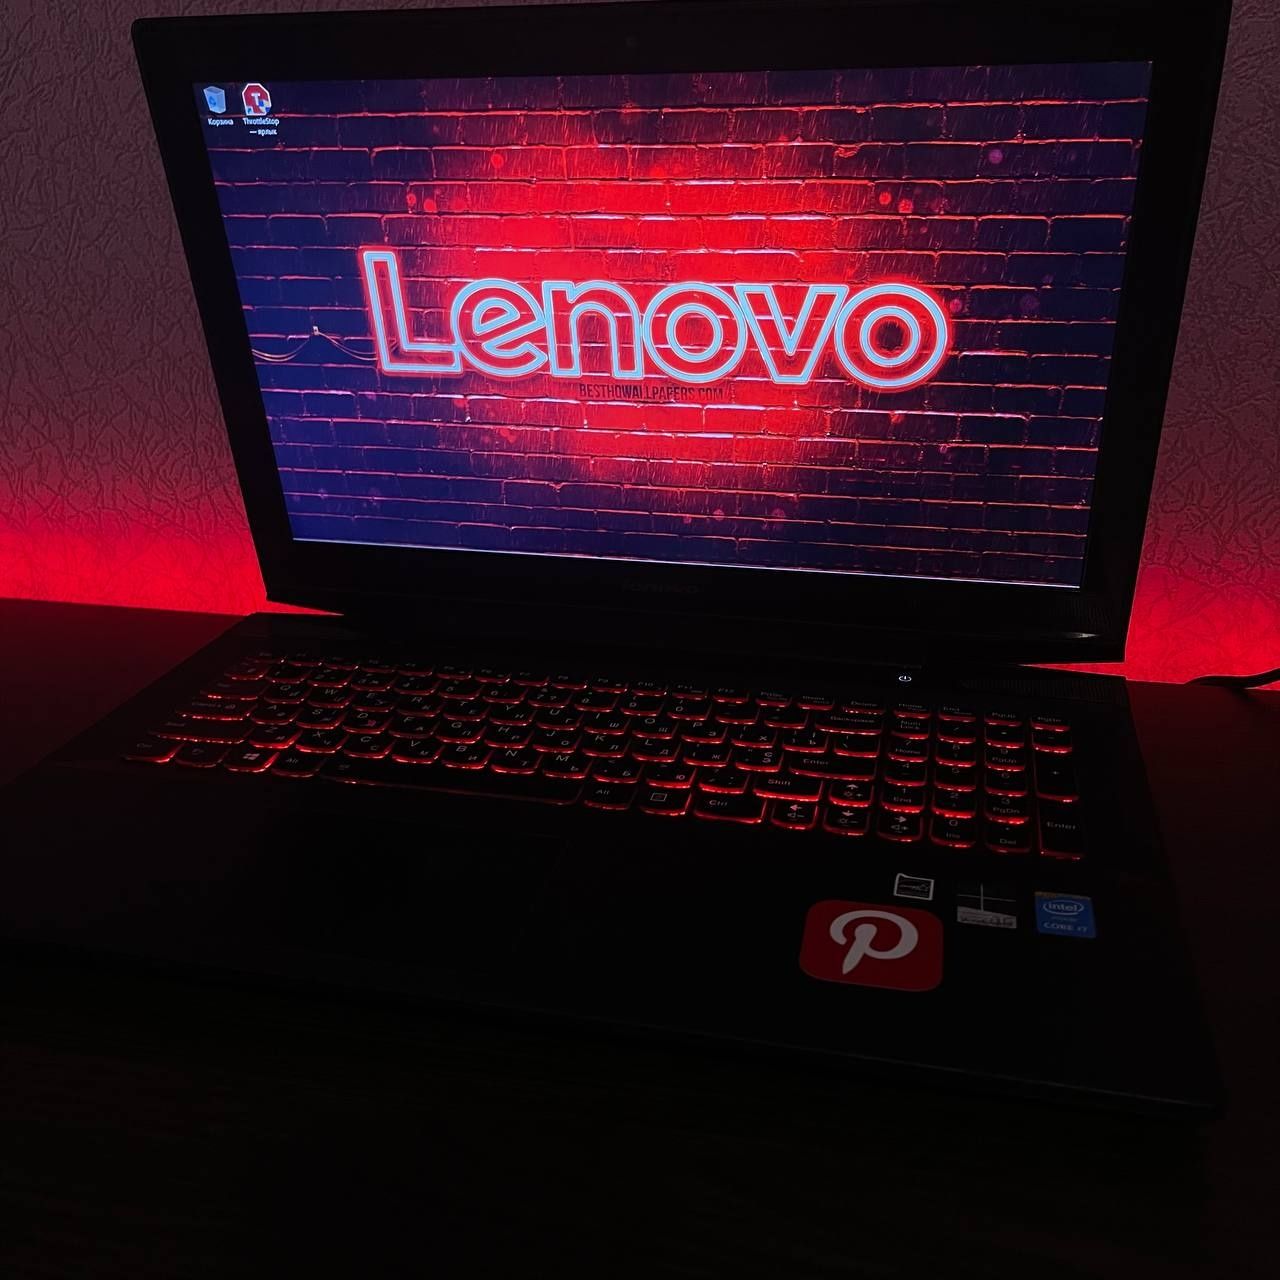 Игровой Lenovo Legion 4k экран/ GTX960/ 8gb ram/ i7 4th 2.6GHz